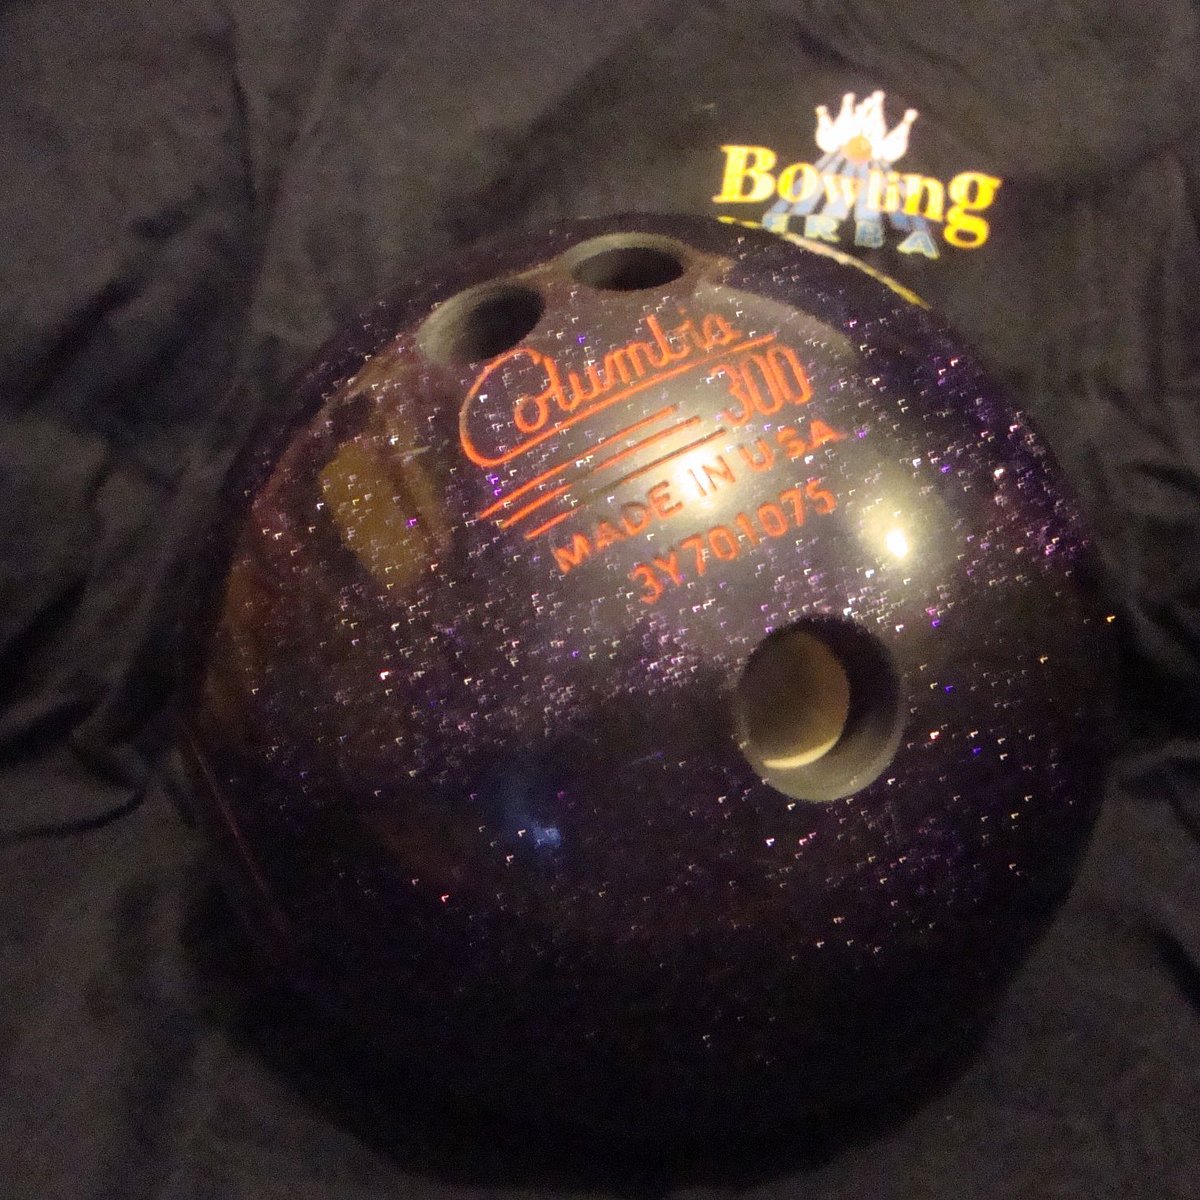 Palla da bowling